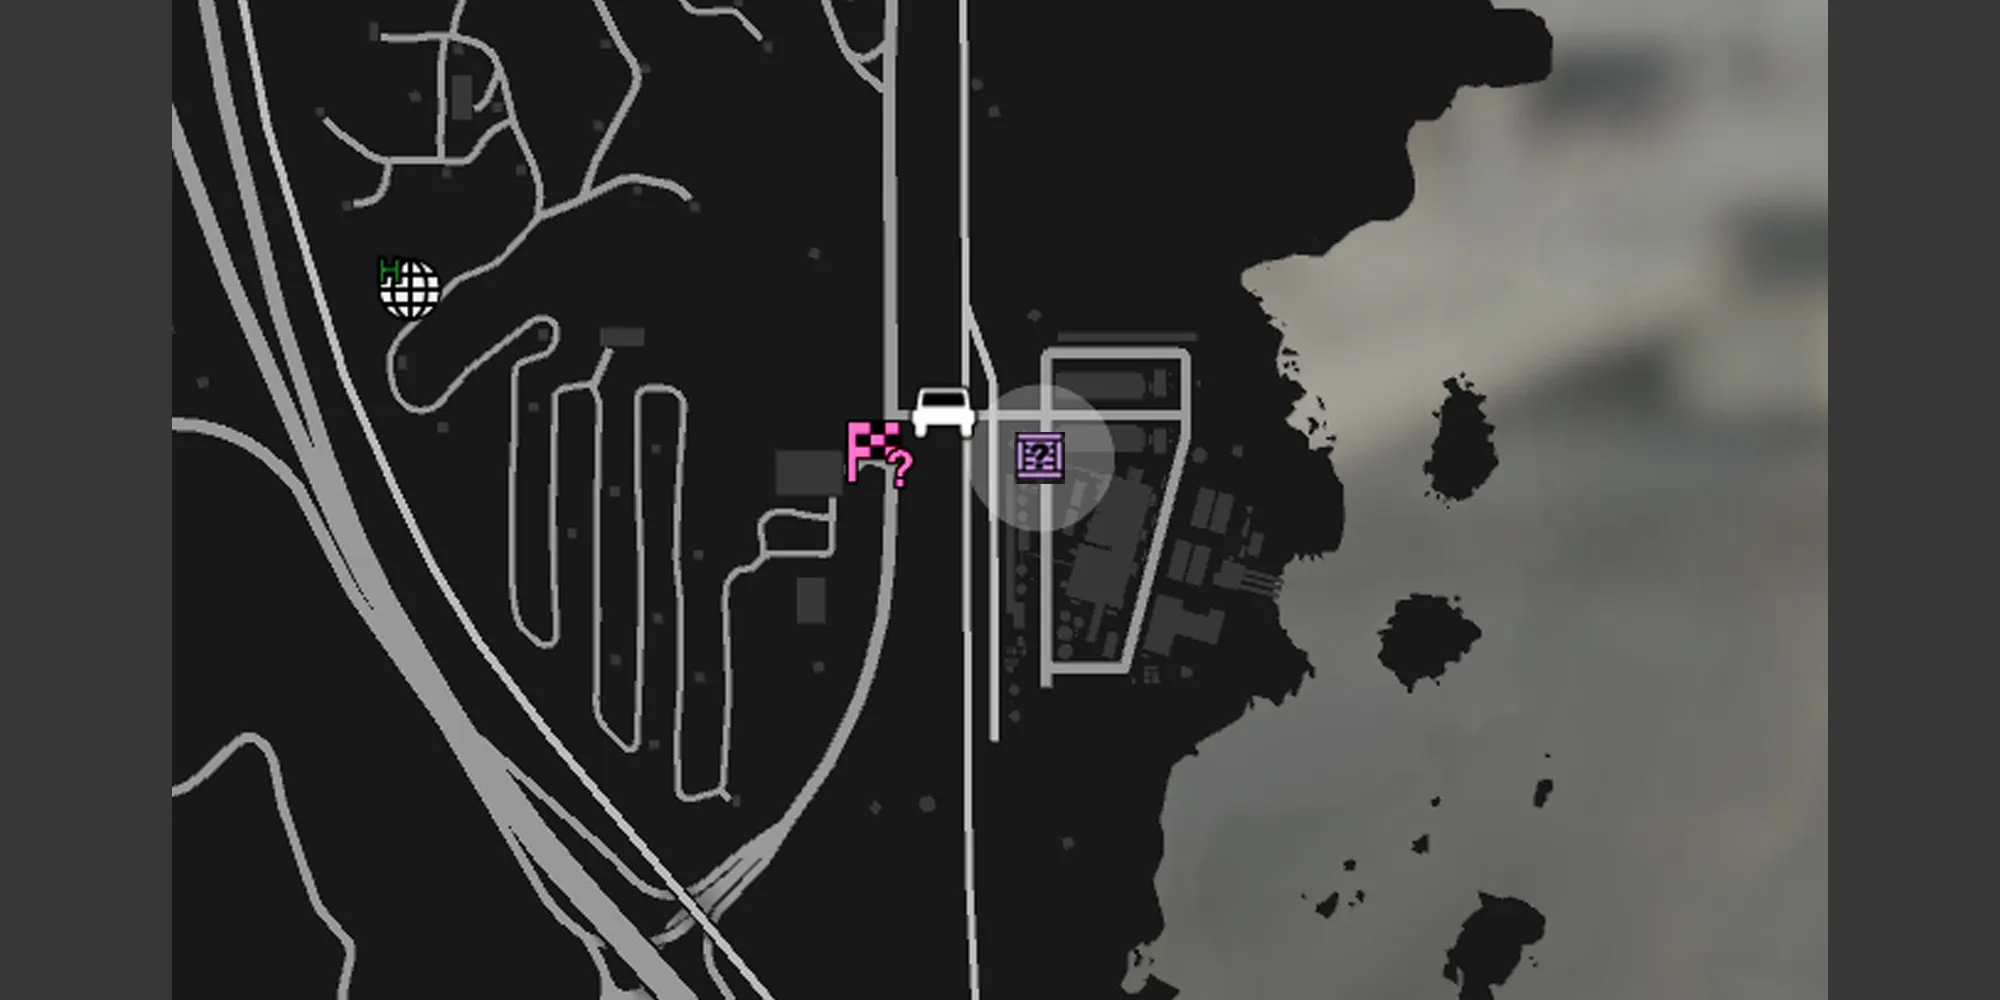 画像はGTAオンラインのマップ上のパーマー・テイラー発電所を示し、灰色の円とG's Cacheの紫色のボックスアイコンが表示されています。